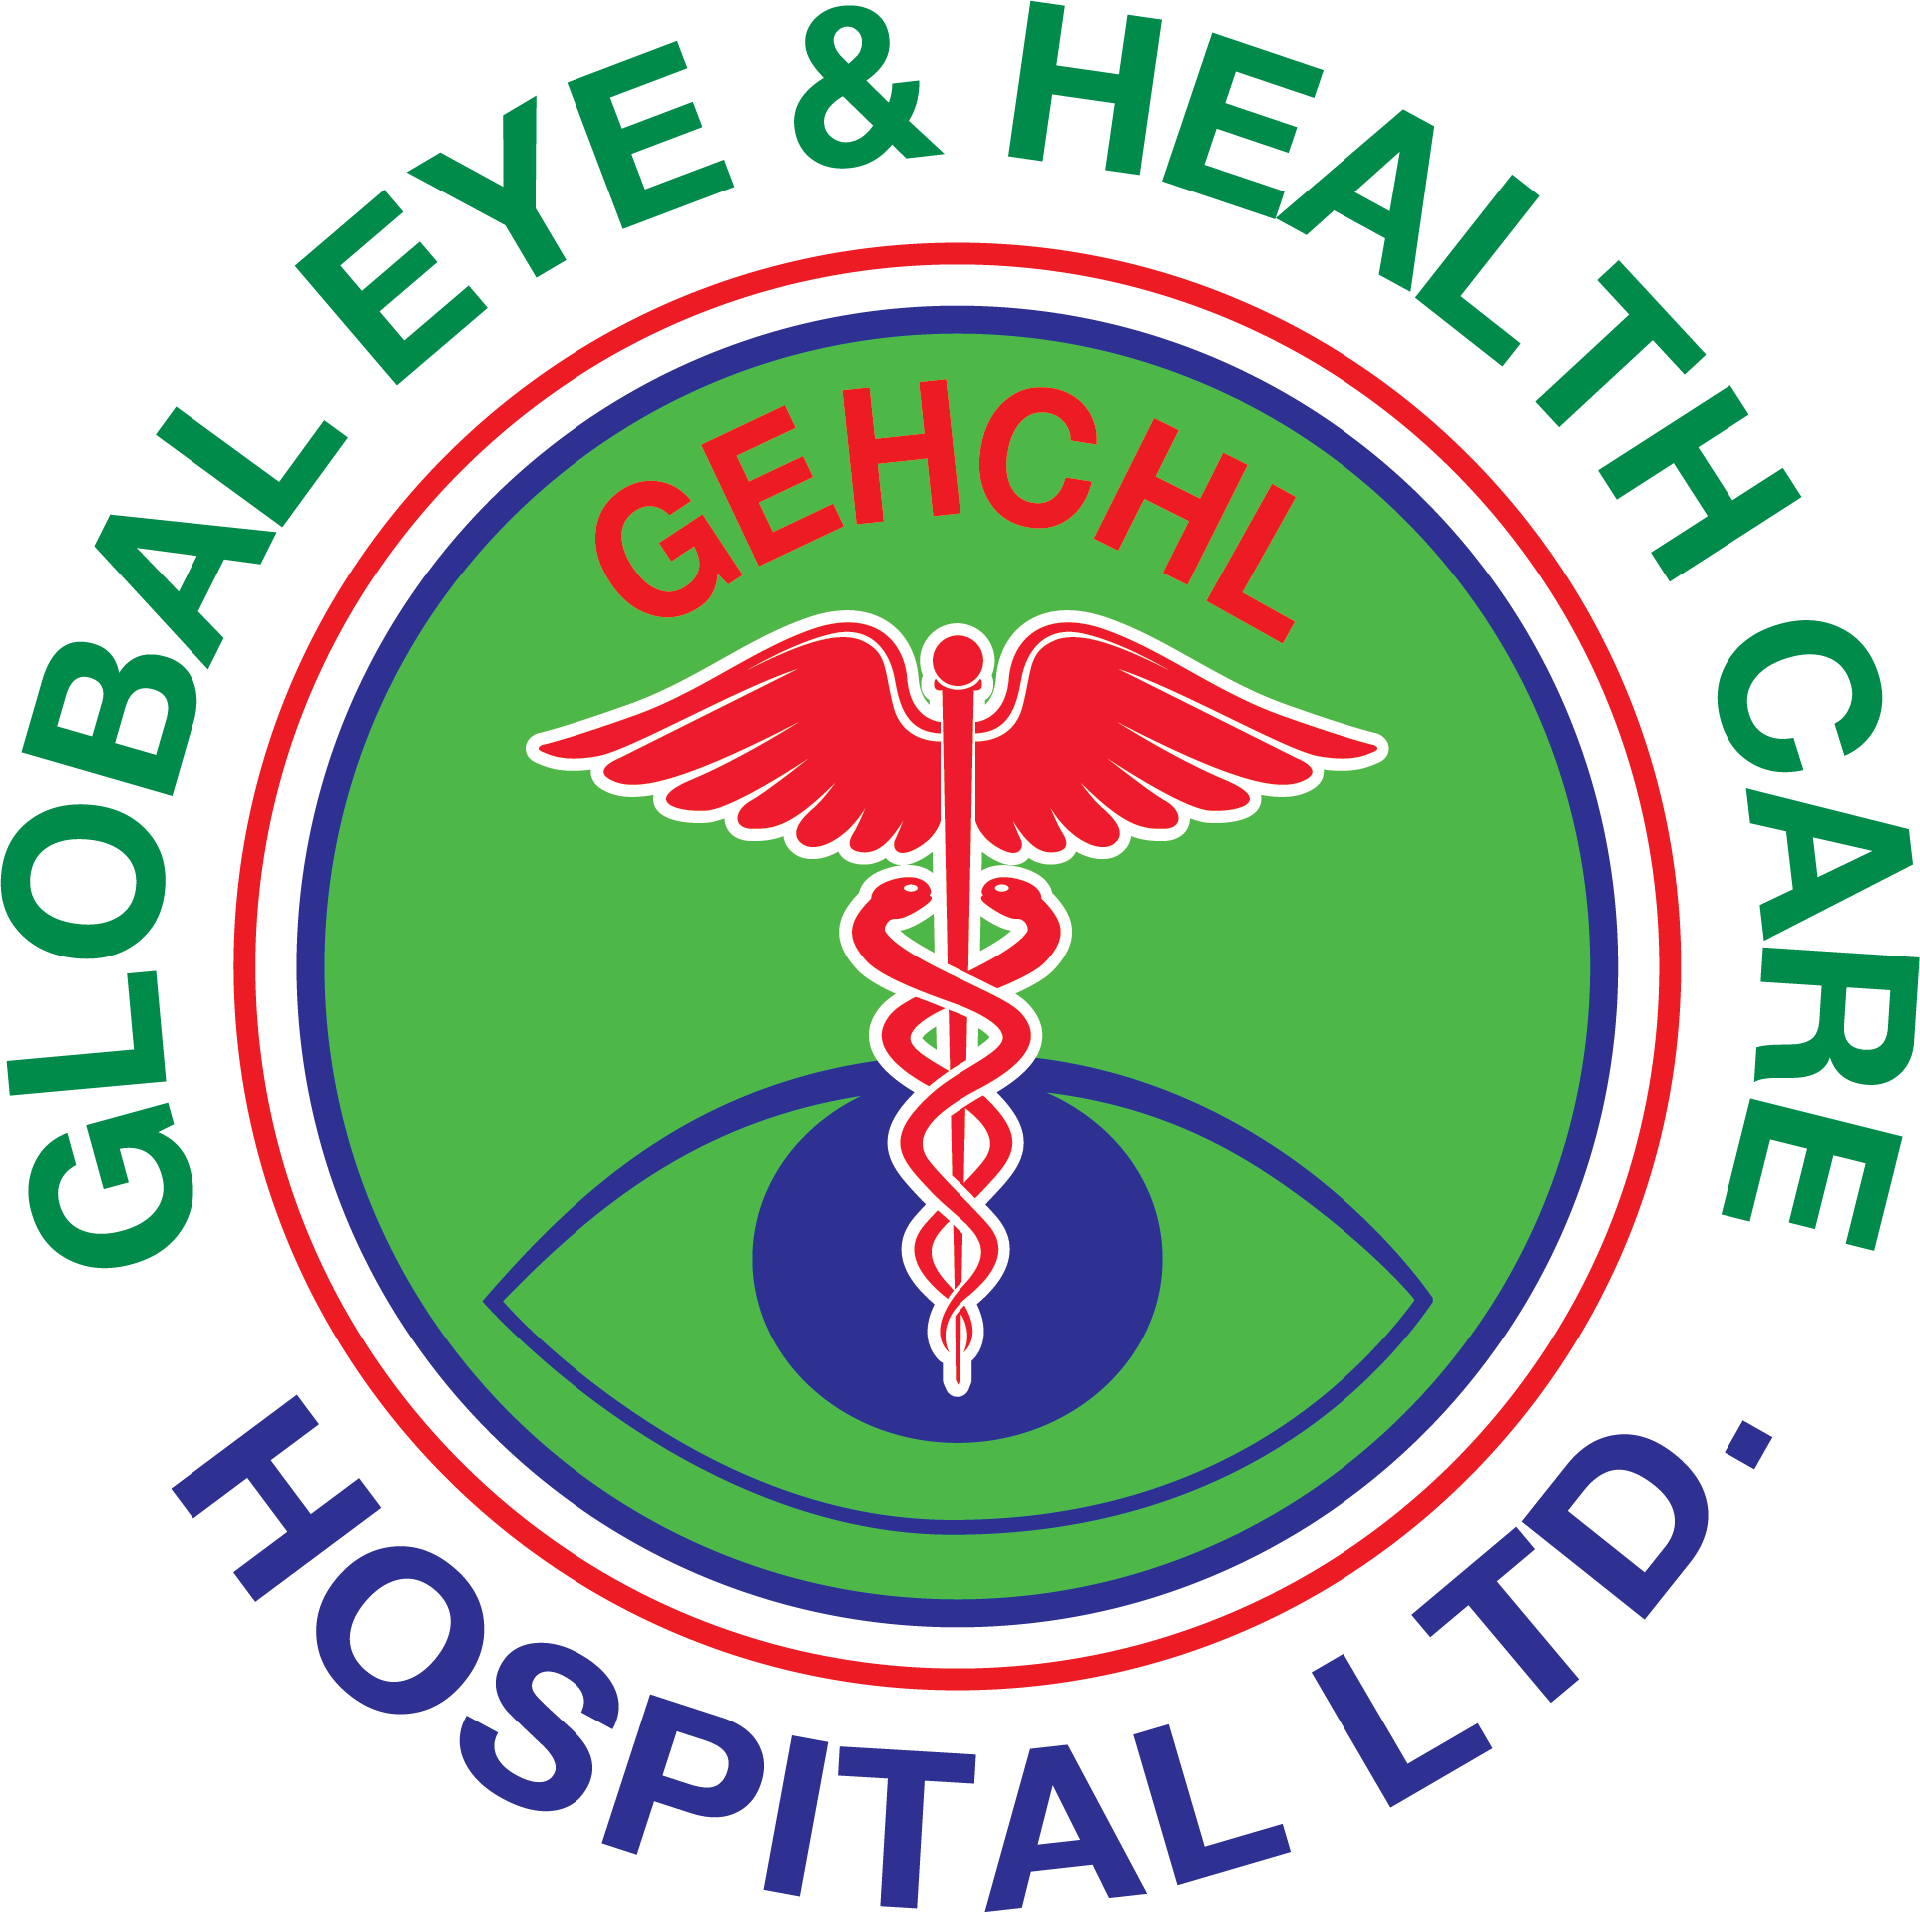 Global Eye & Health Care Hospital Ltd.